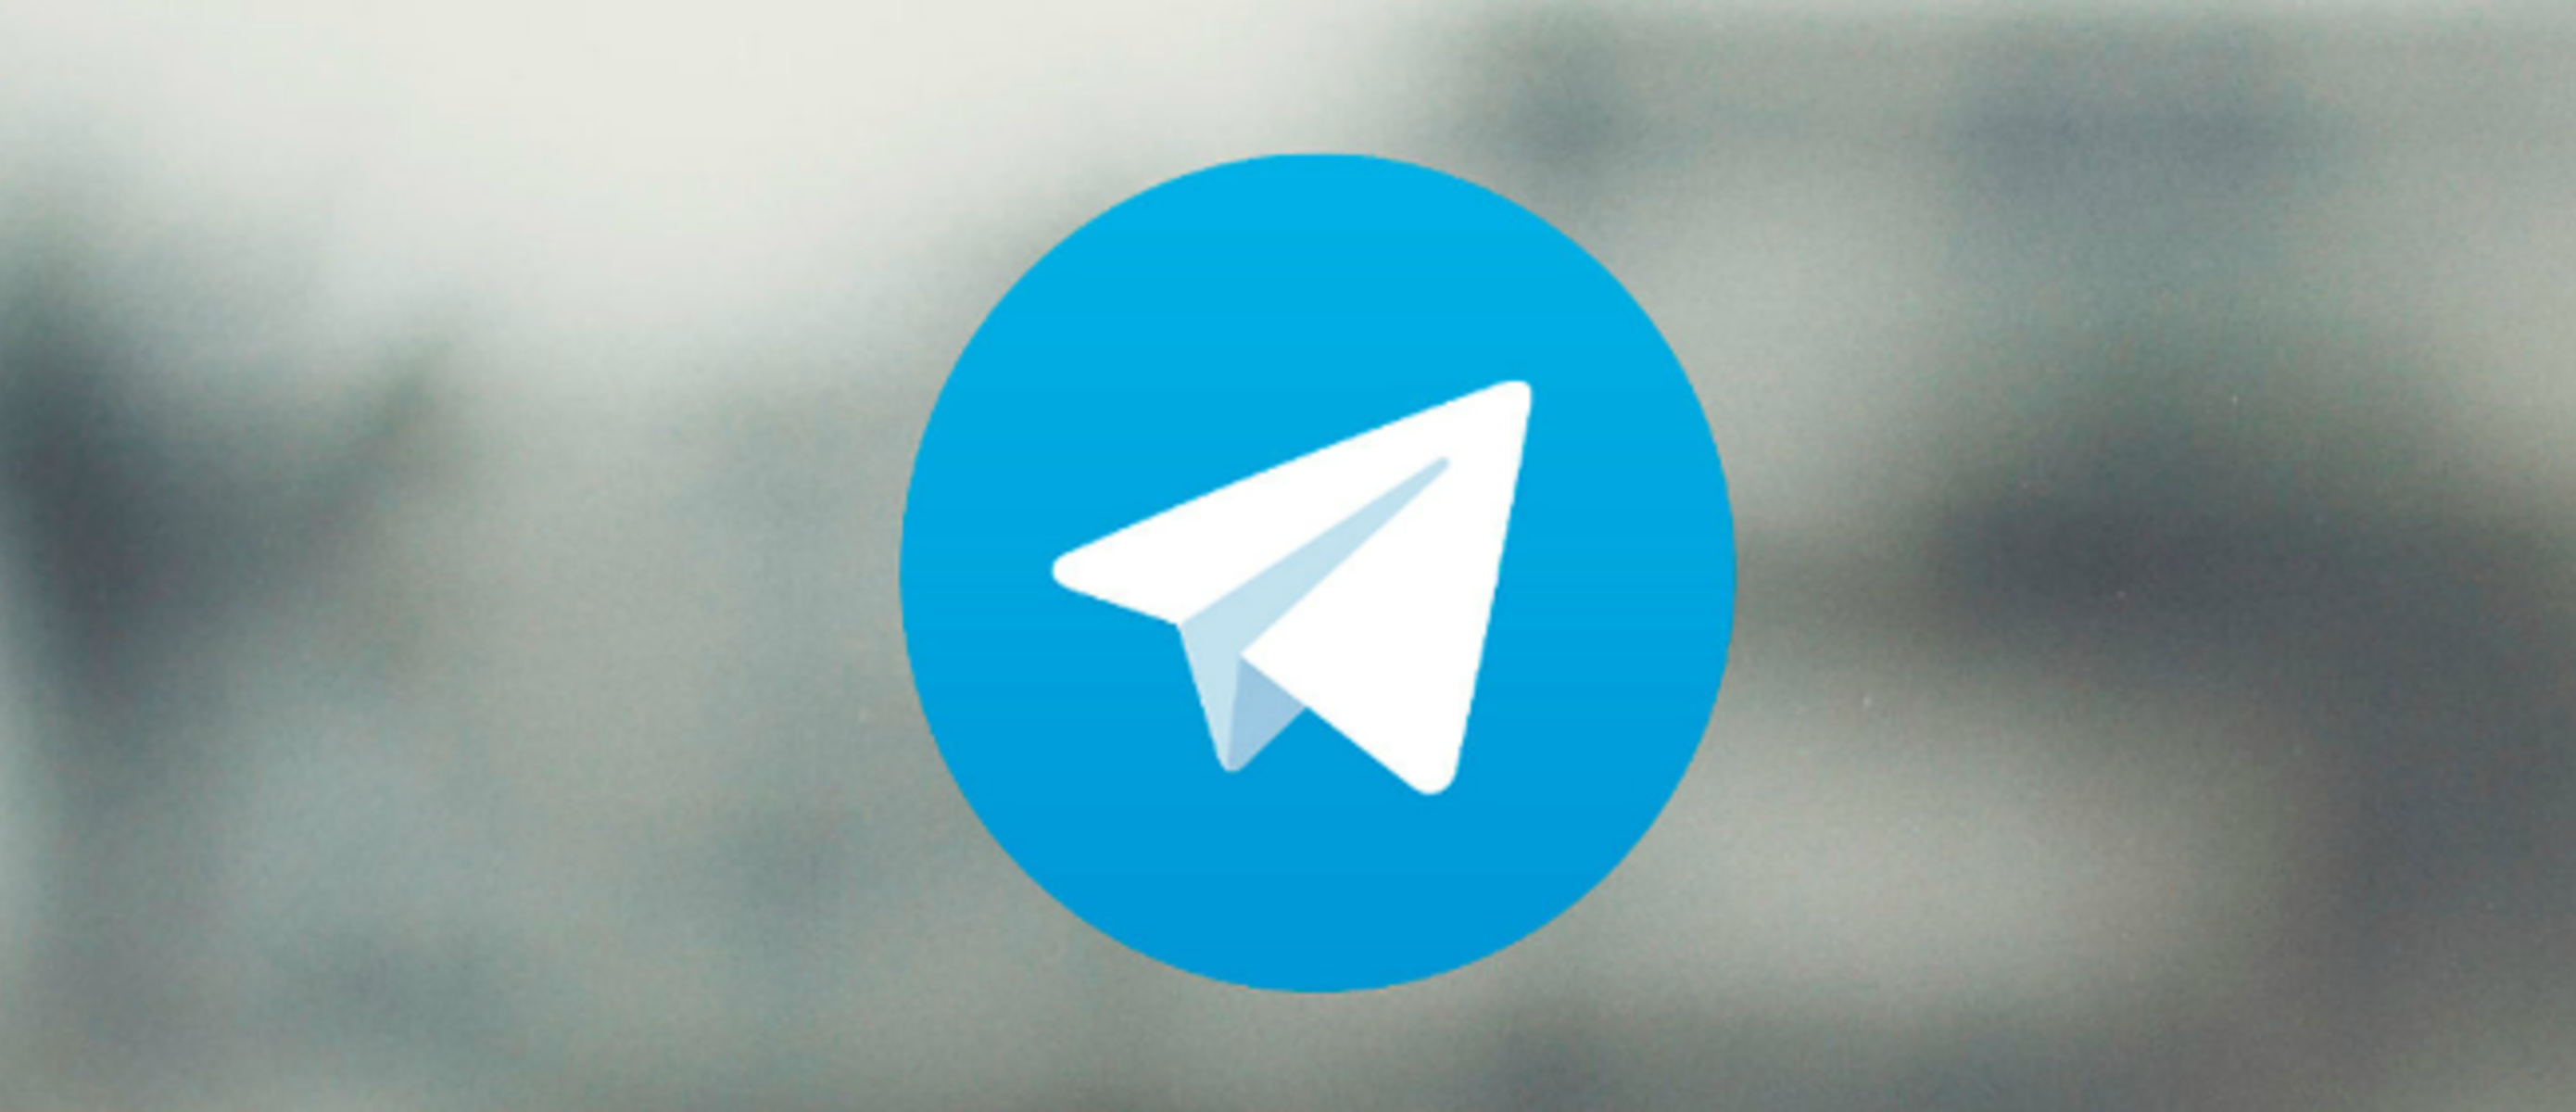 Картинка телеграм. Телеграм. Фото для телеграмма. Логотип телеграм. Значок телеграм.